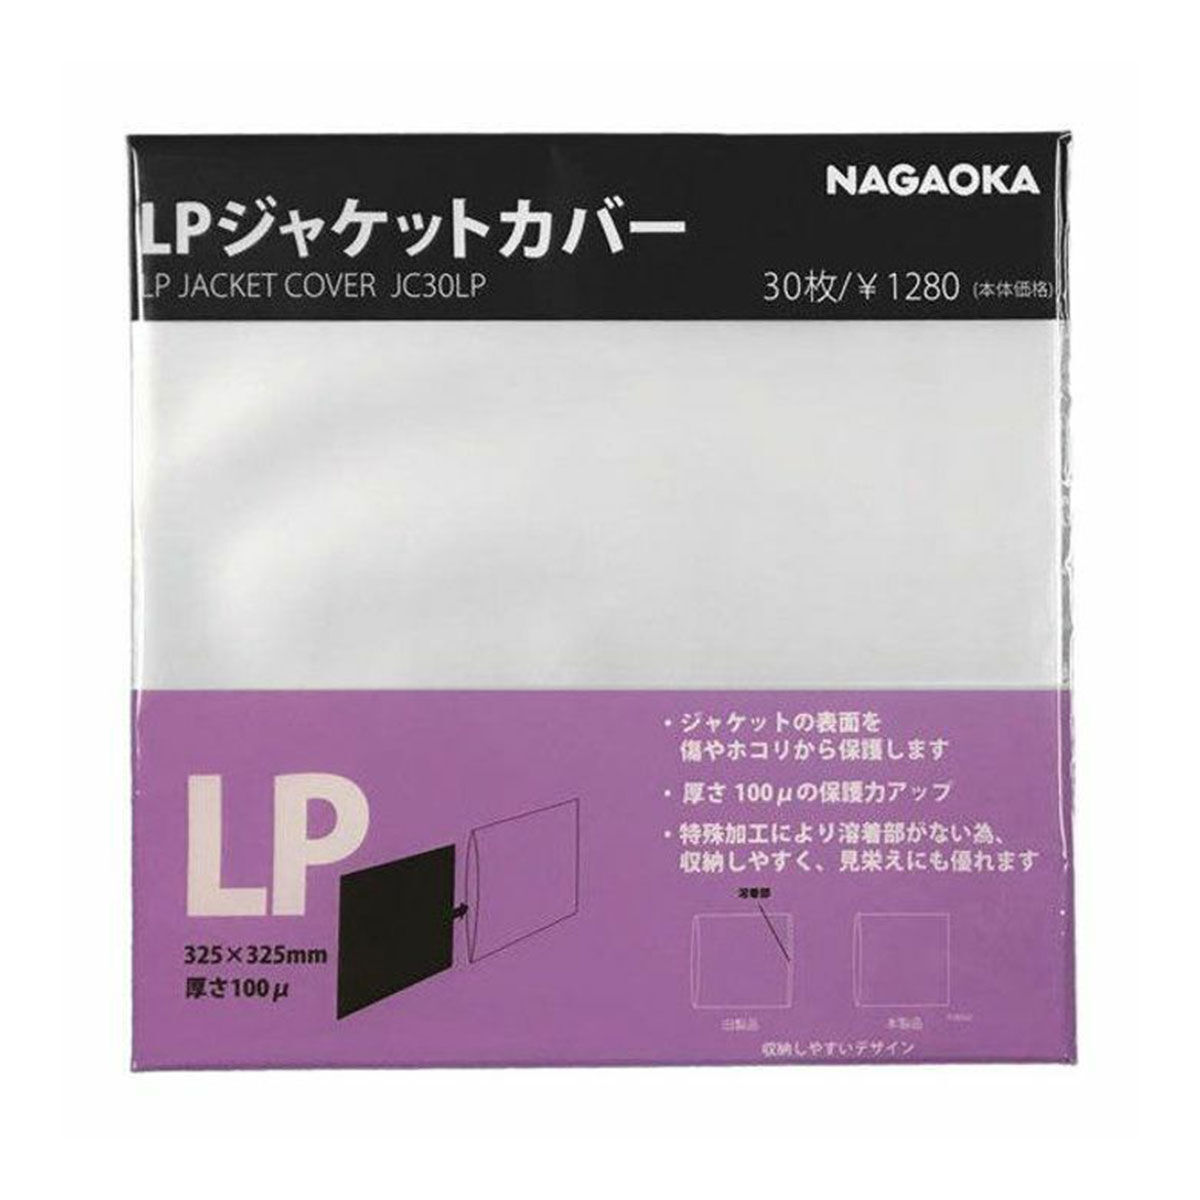 Nagaoka JC30LP Outer LP Sleeves (Pack of 30)